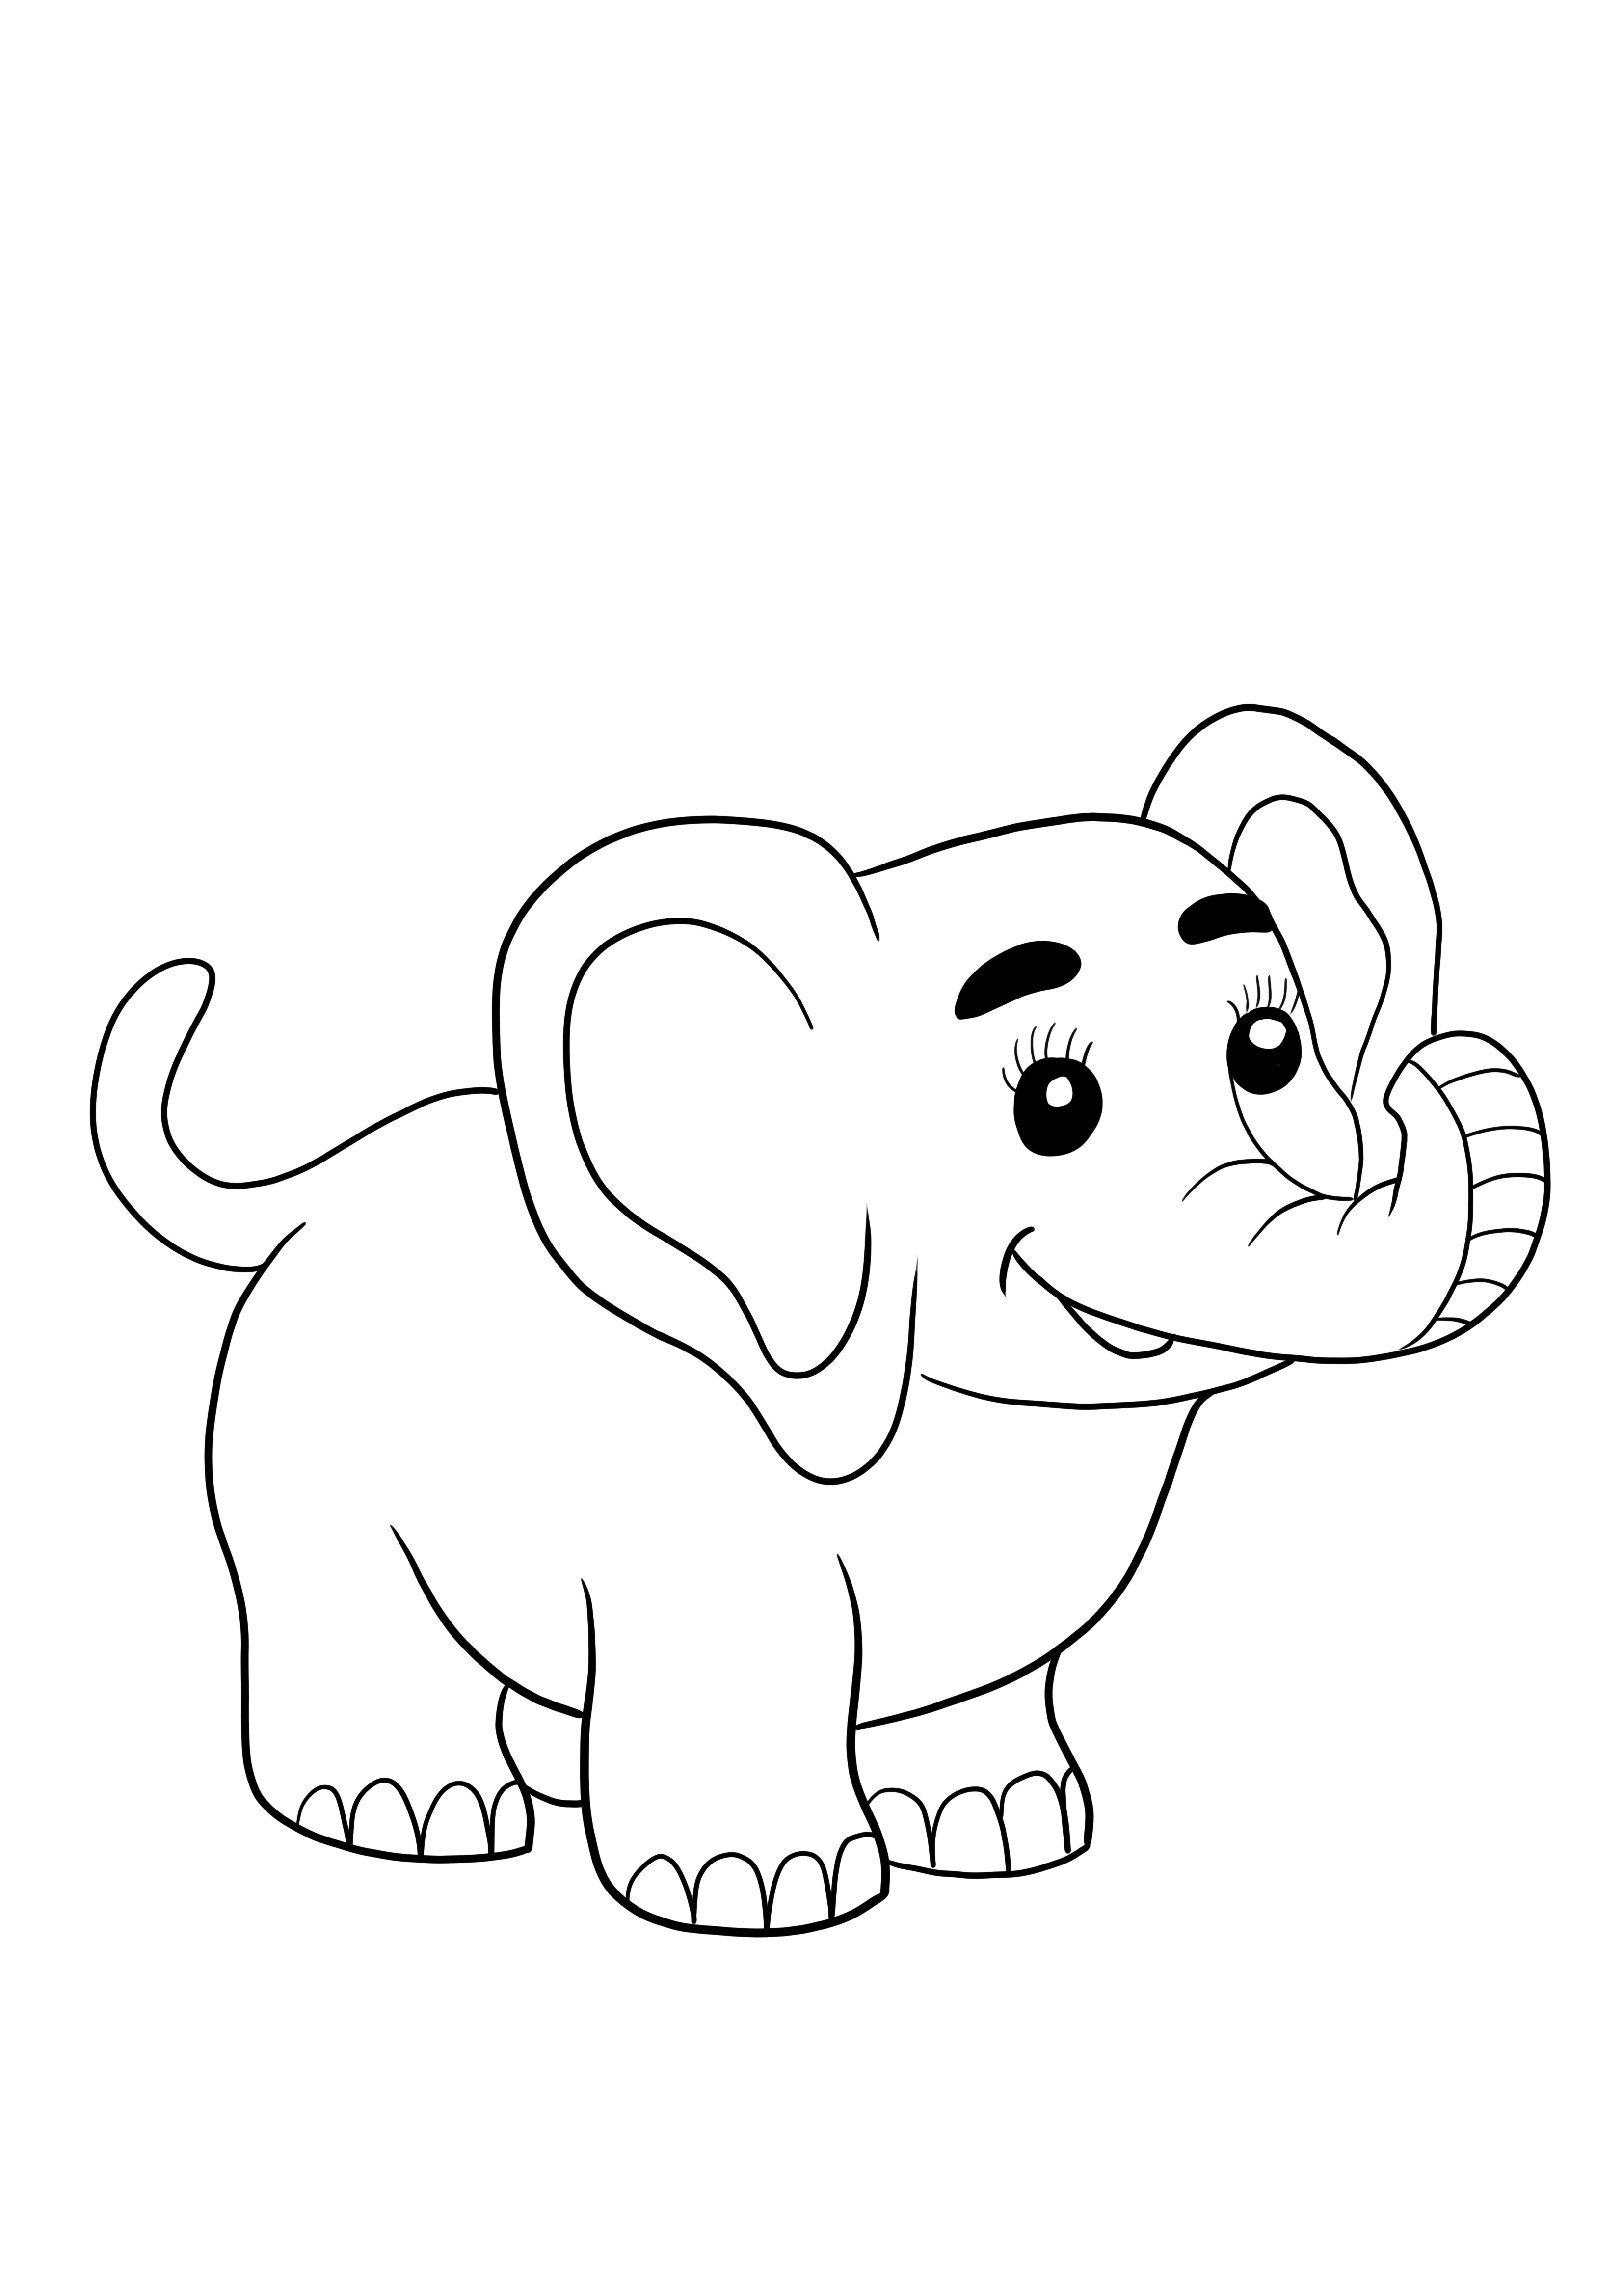 Bayi gajah lucu gratis untuk dicetak dan diwarnai untuk anak-anak dari segala usia